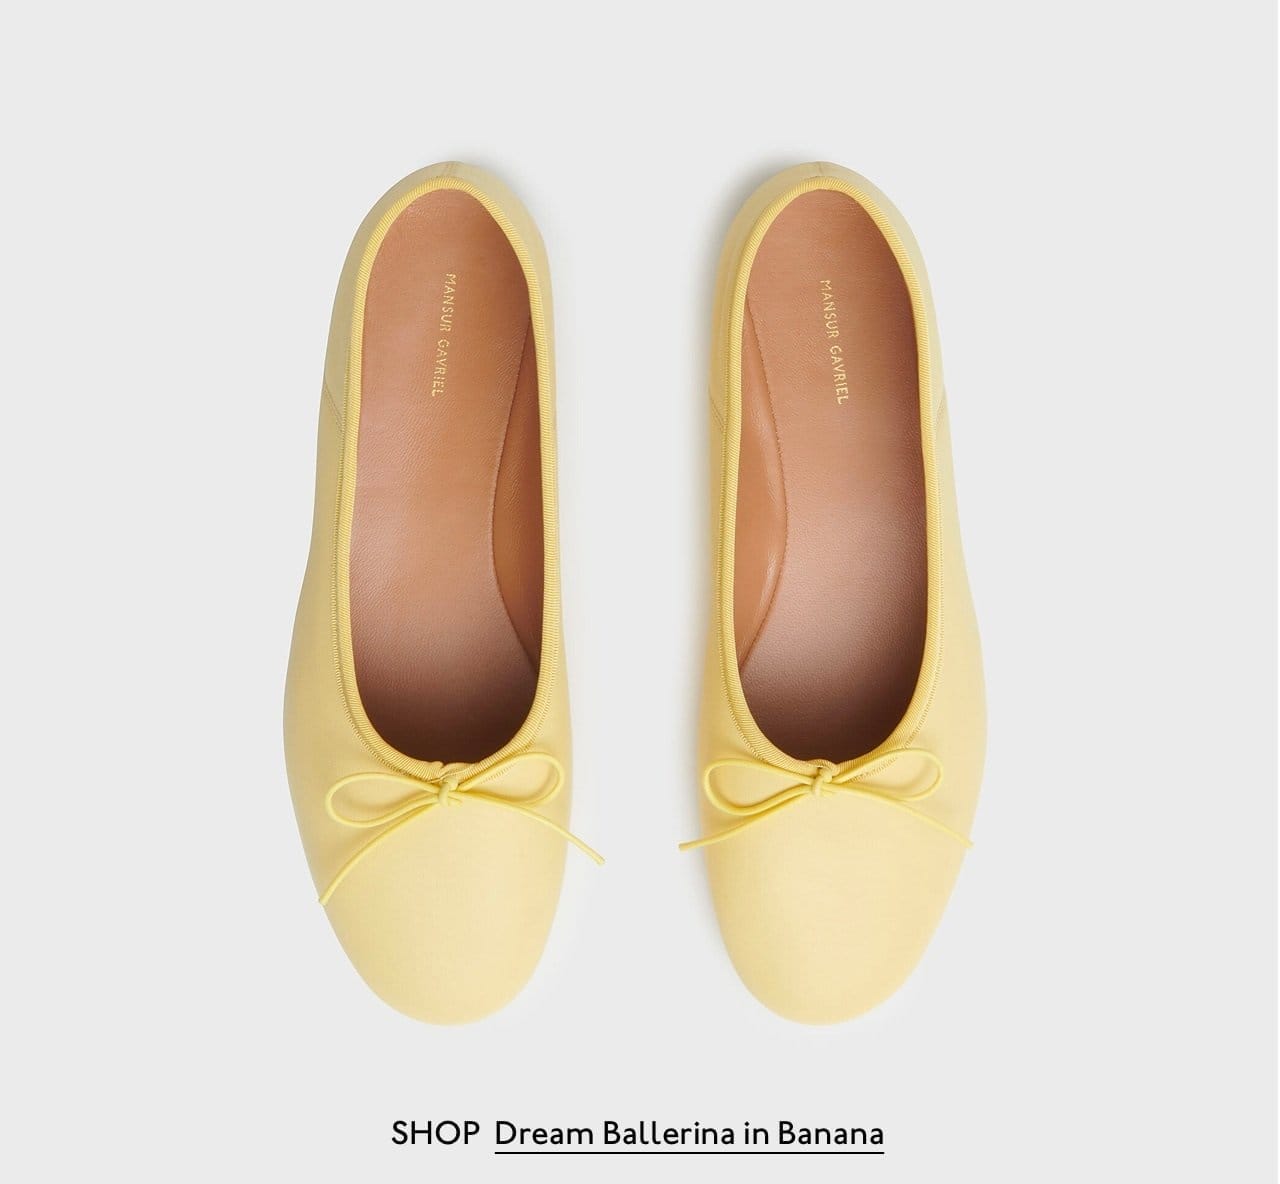 Shop Dream Ballerina in Banana.